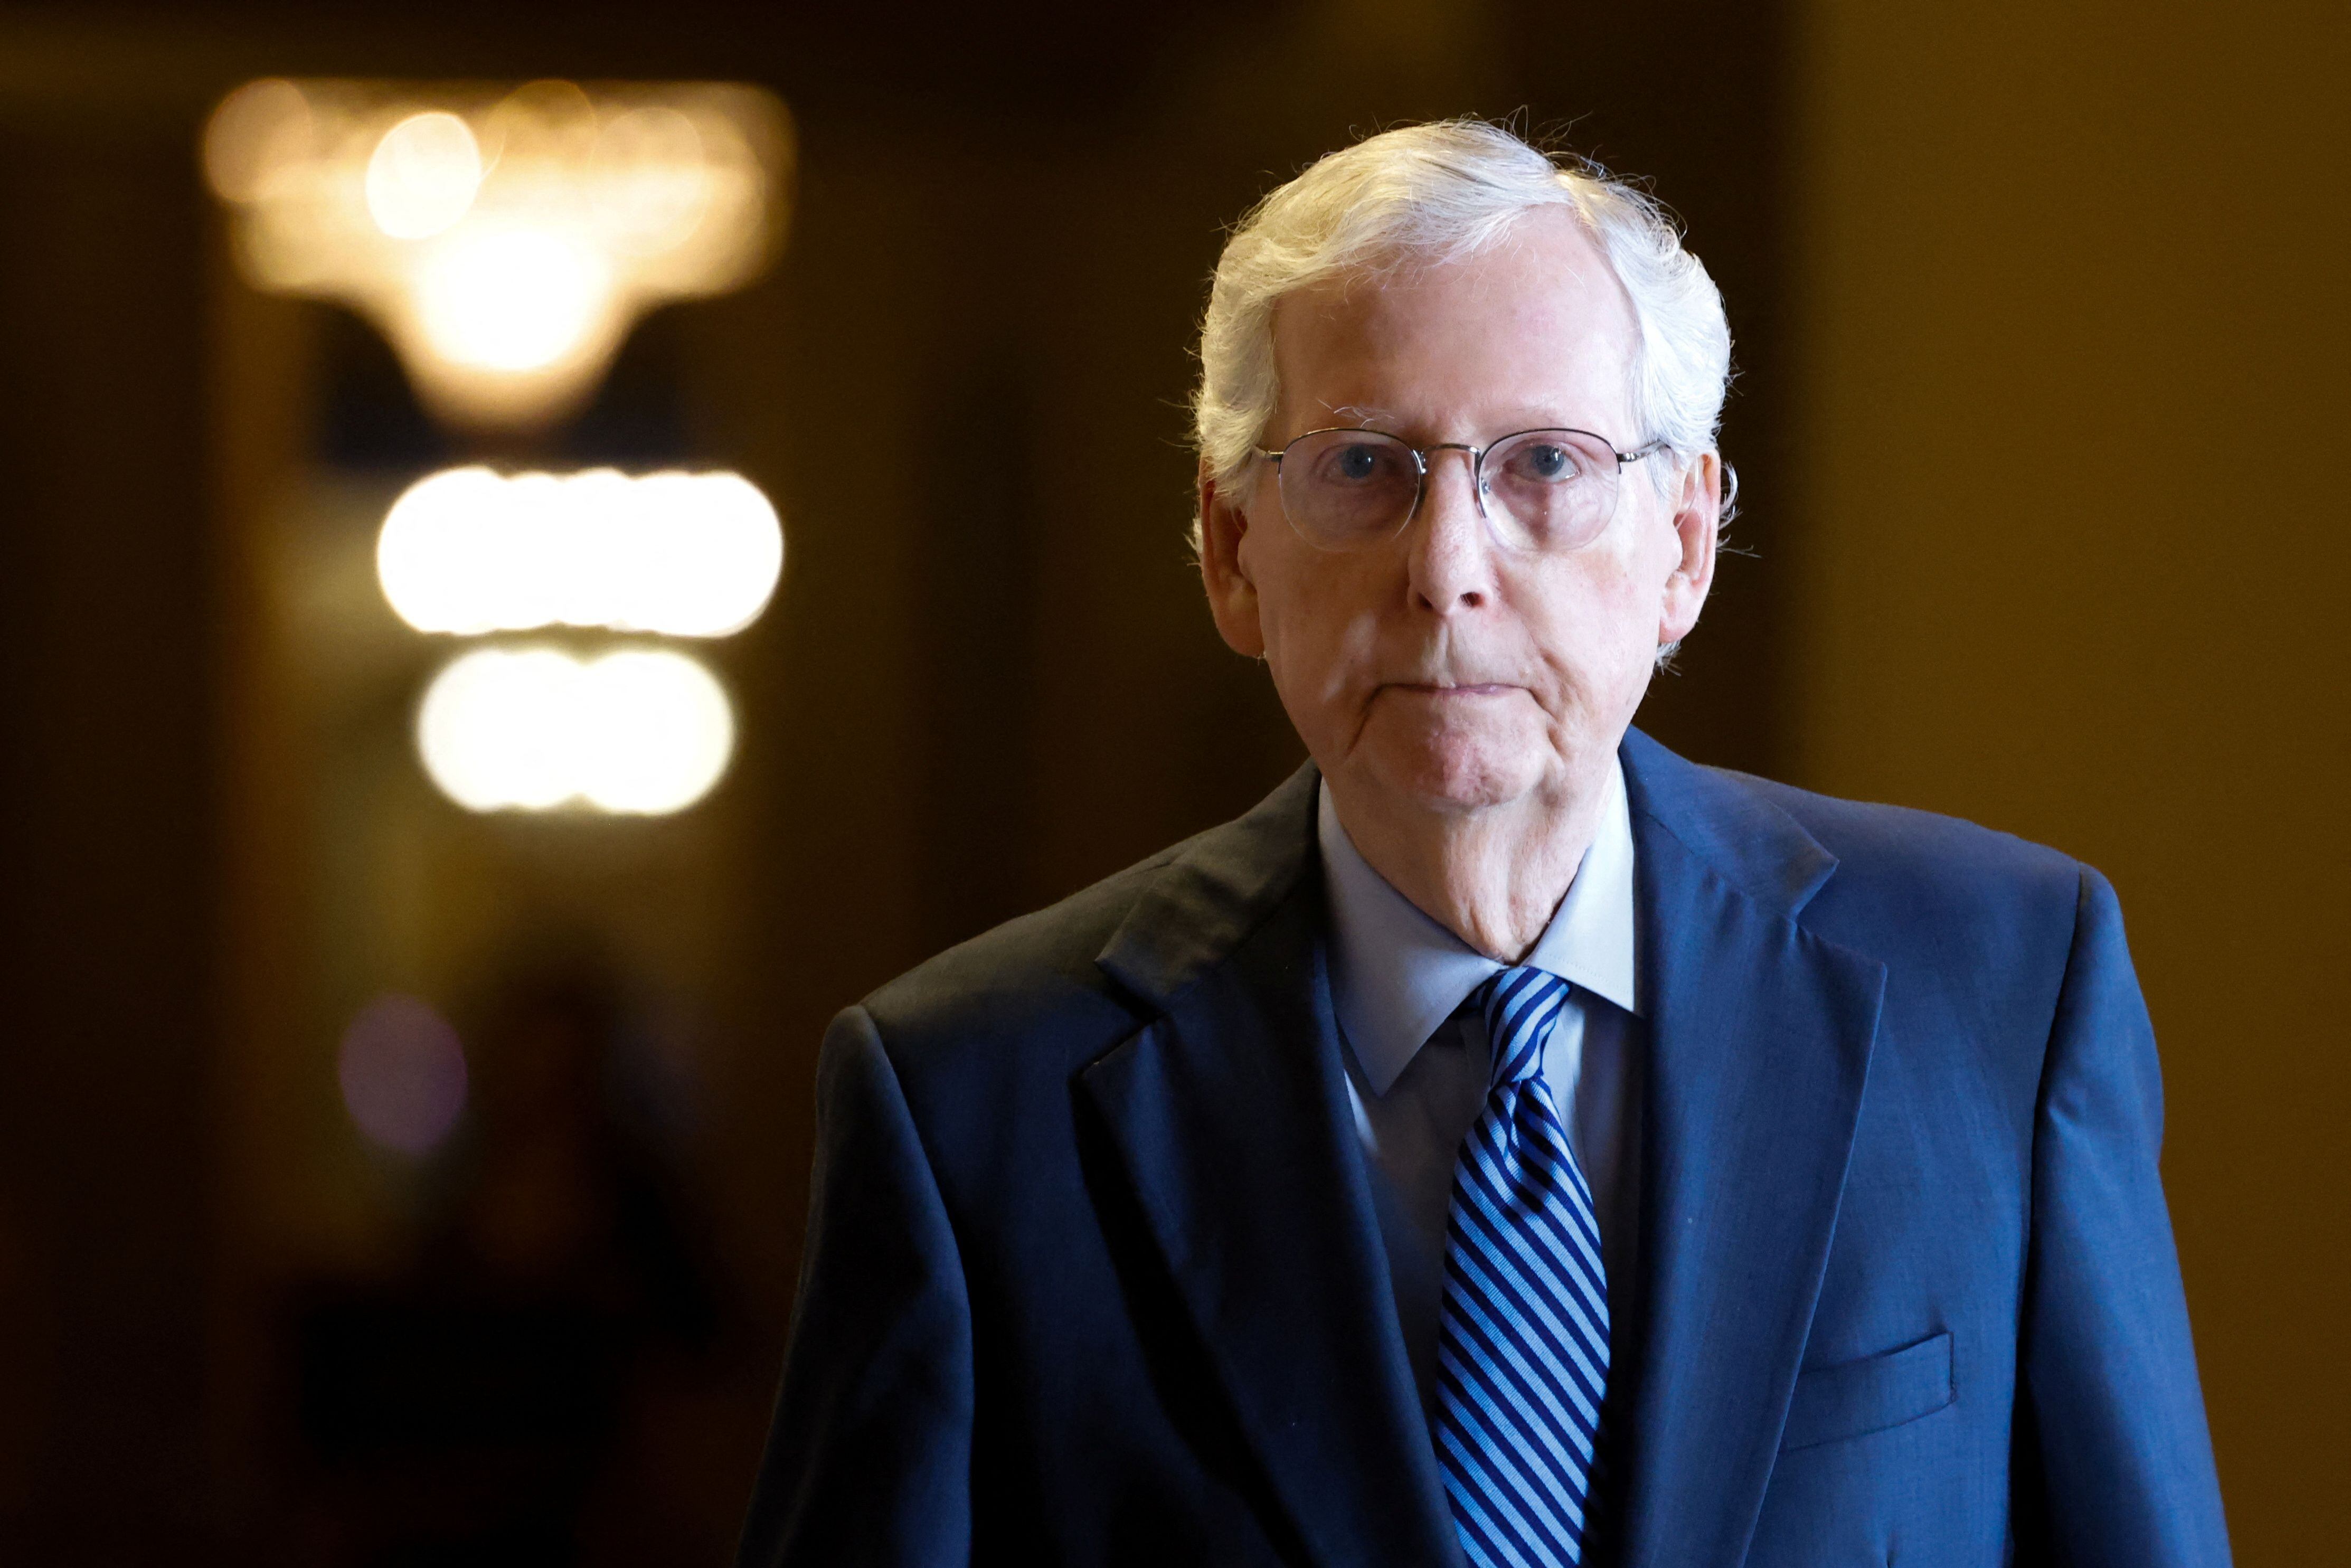 El líder de la minoría del Senado, Mitch McConnell. REUTERS/Julia Nikhinson